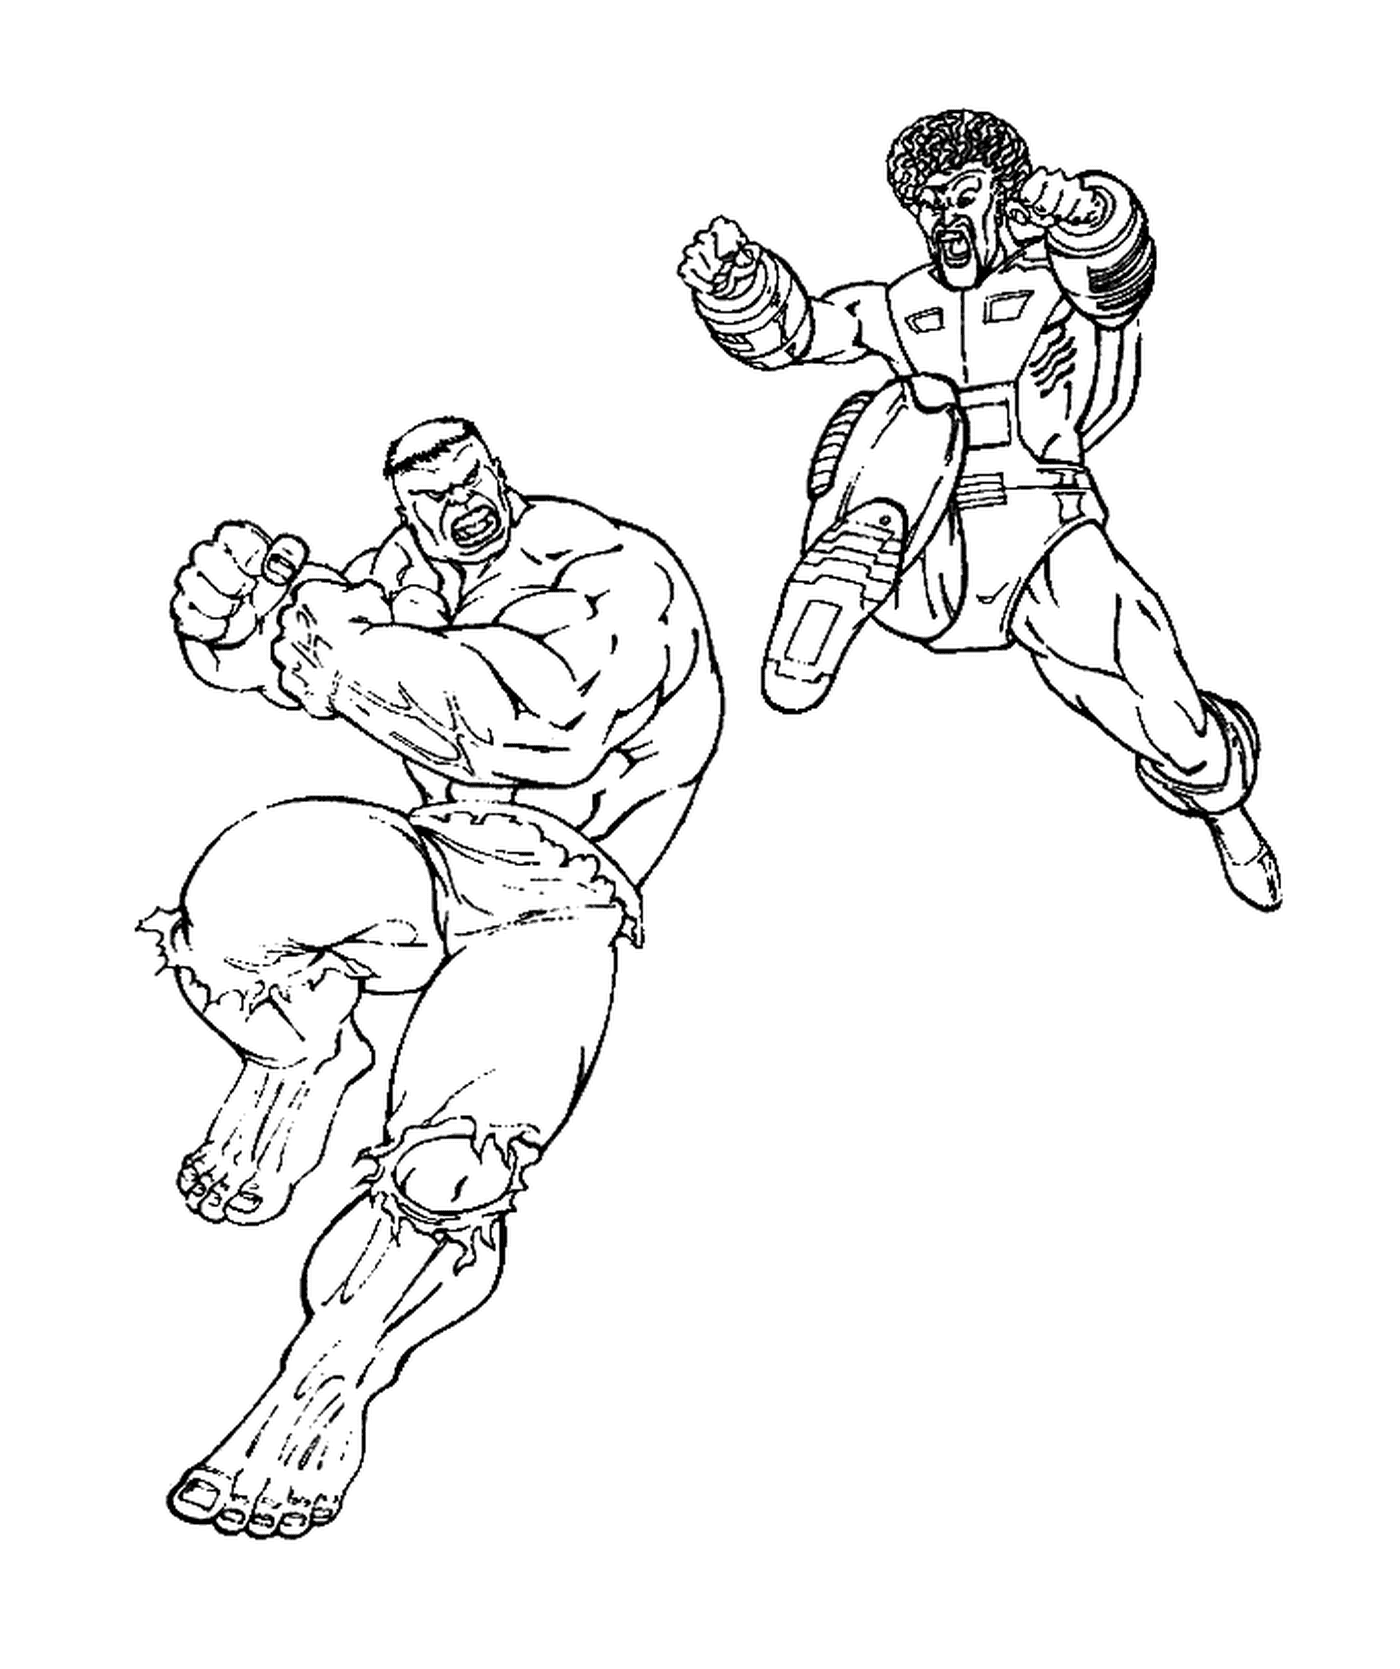  Hulk luchando contra un chico malo 